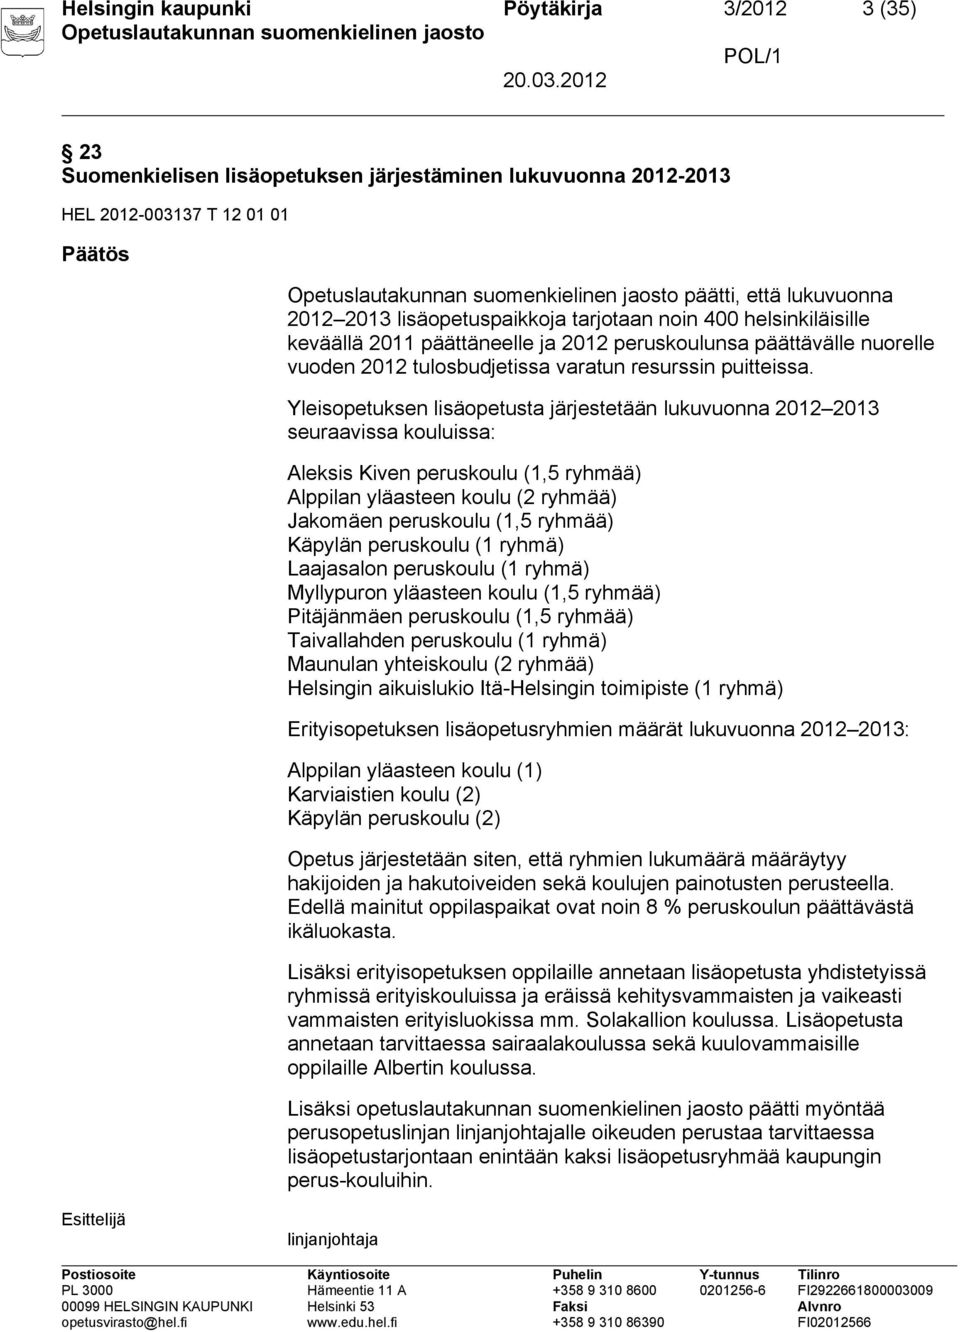 Yleisopetuksen lisäopetusta järjestetään lukuvuonna 2012 2013 seuraavissa kouluissa: Aleksis Kiven peruskoulu (1,5 ryhmää) Alppilan yläasteen koulu (2 ryhmää) Jakomäen peruskoulu (1,5 ryhmää) Käpylän